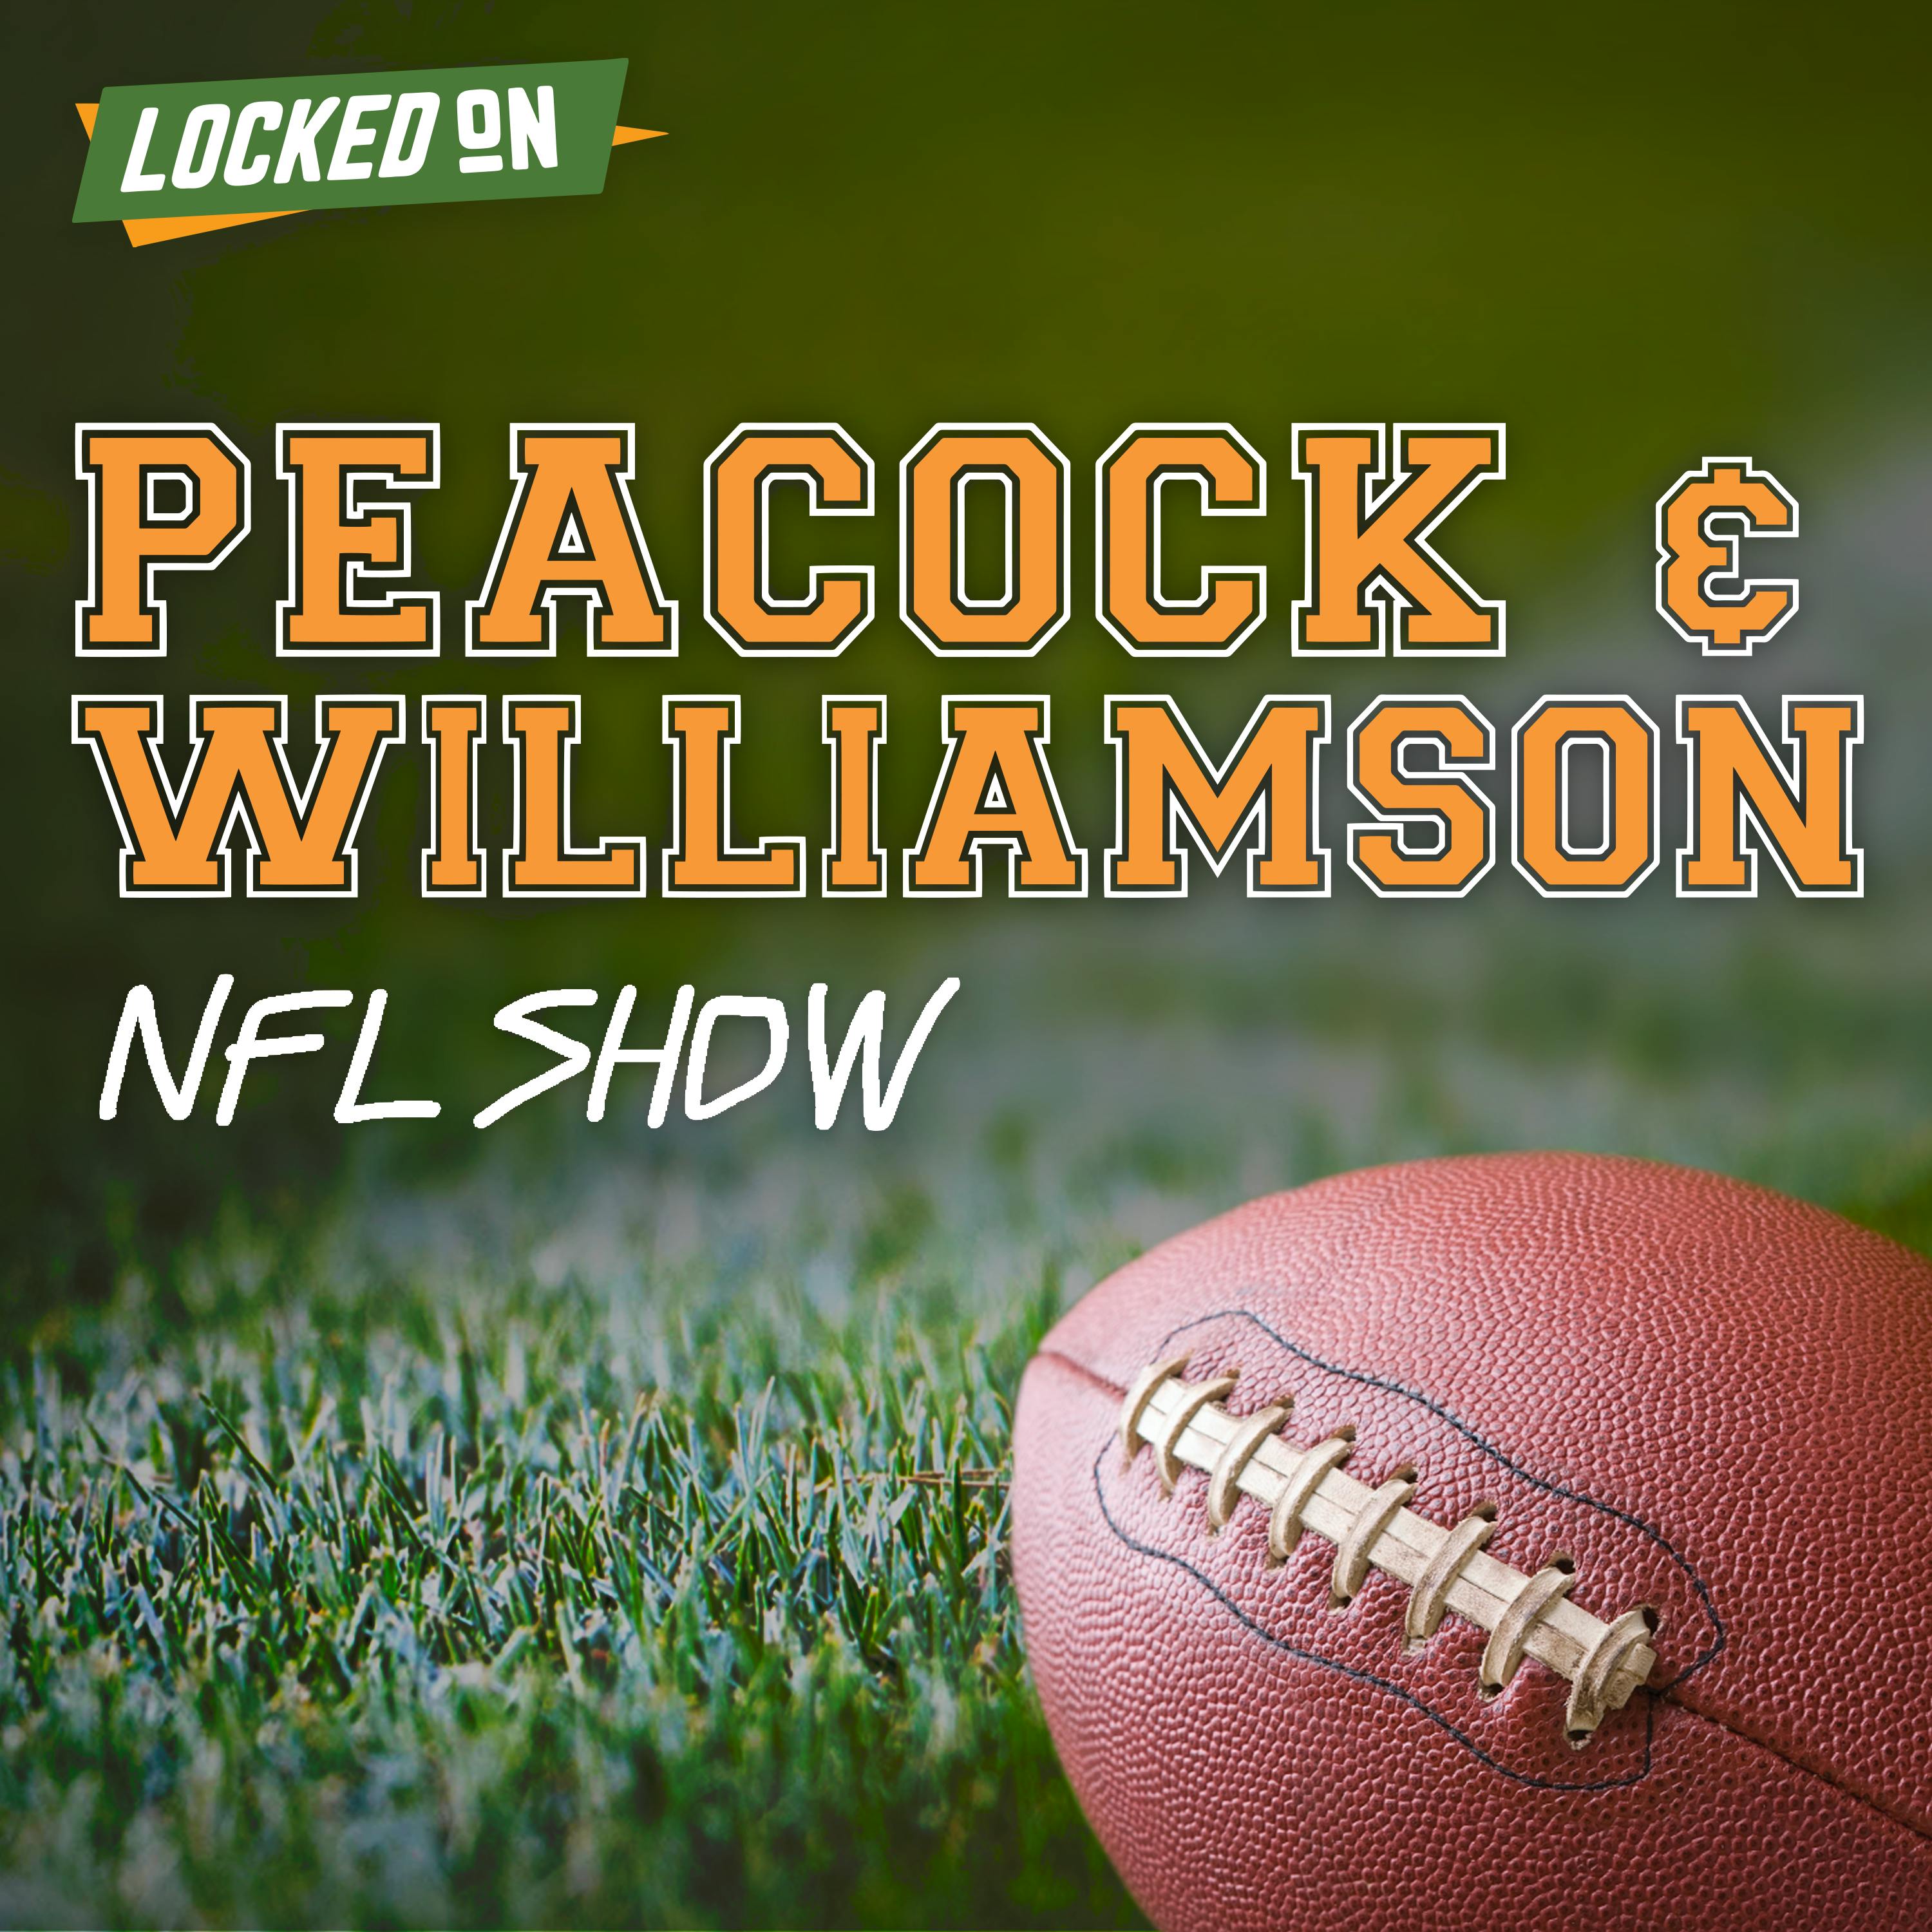 Peacock & Williamson: NFL show on September 26, 2022